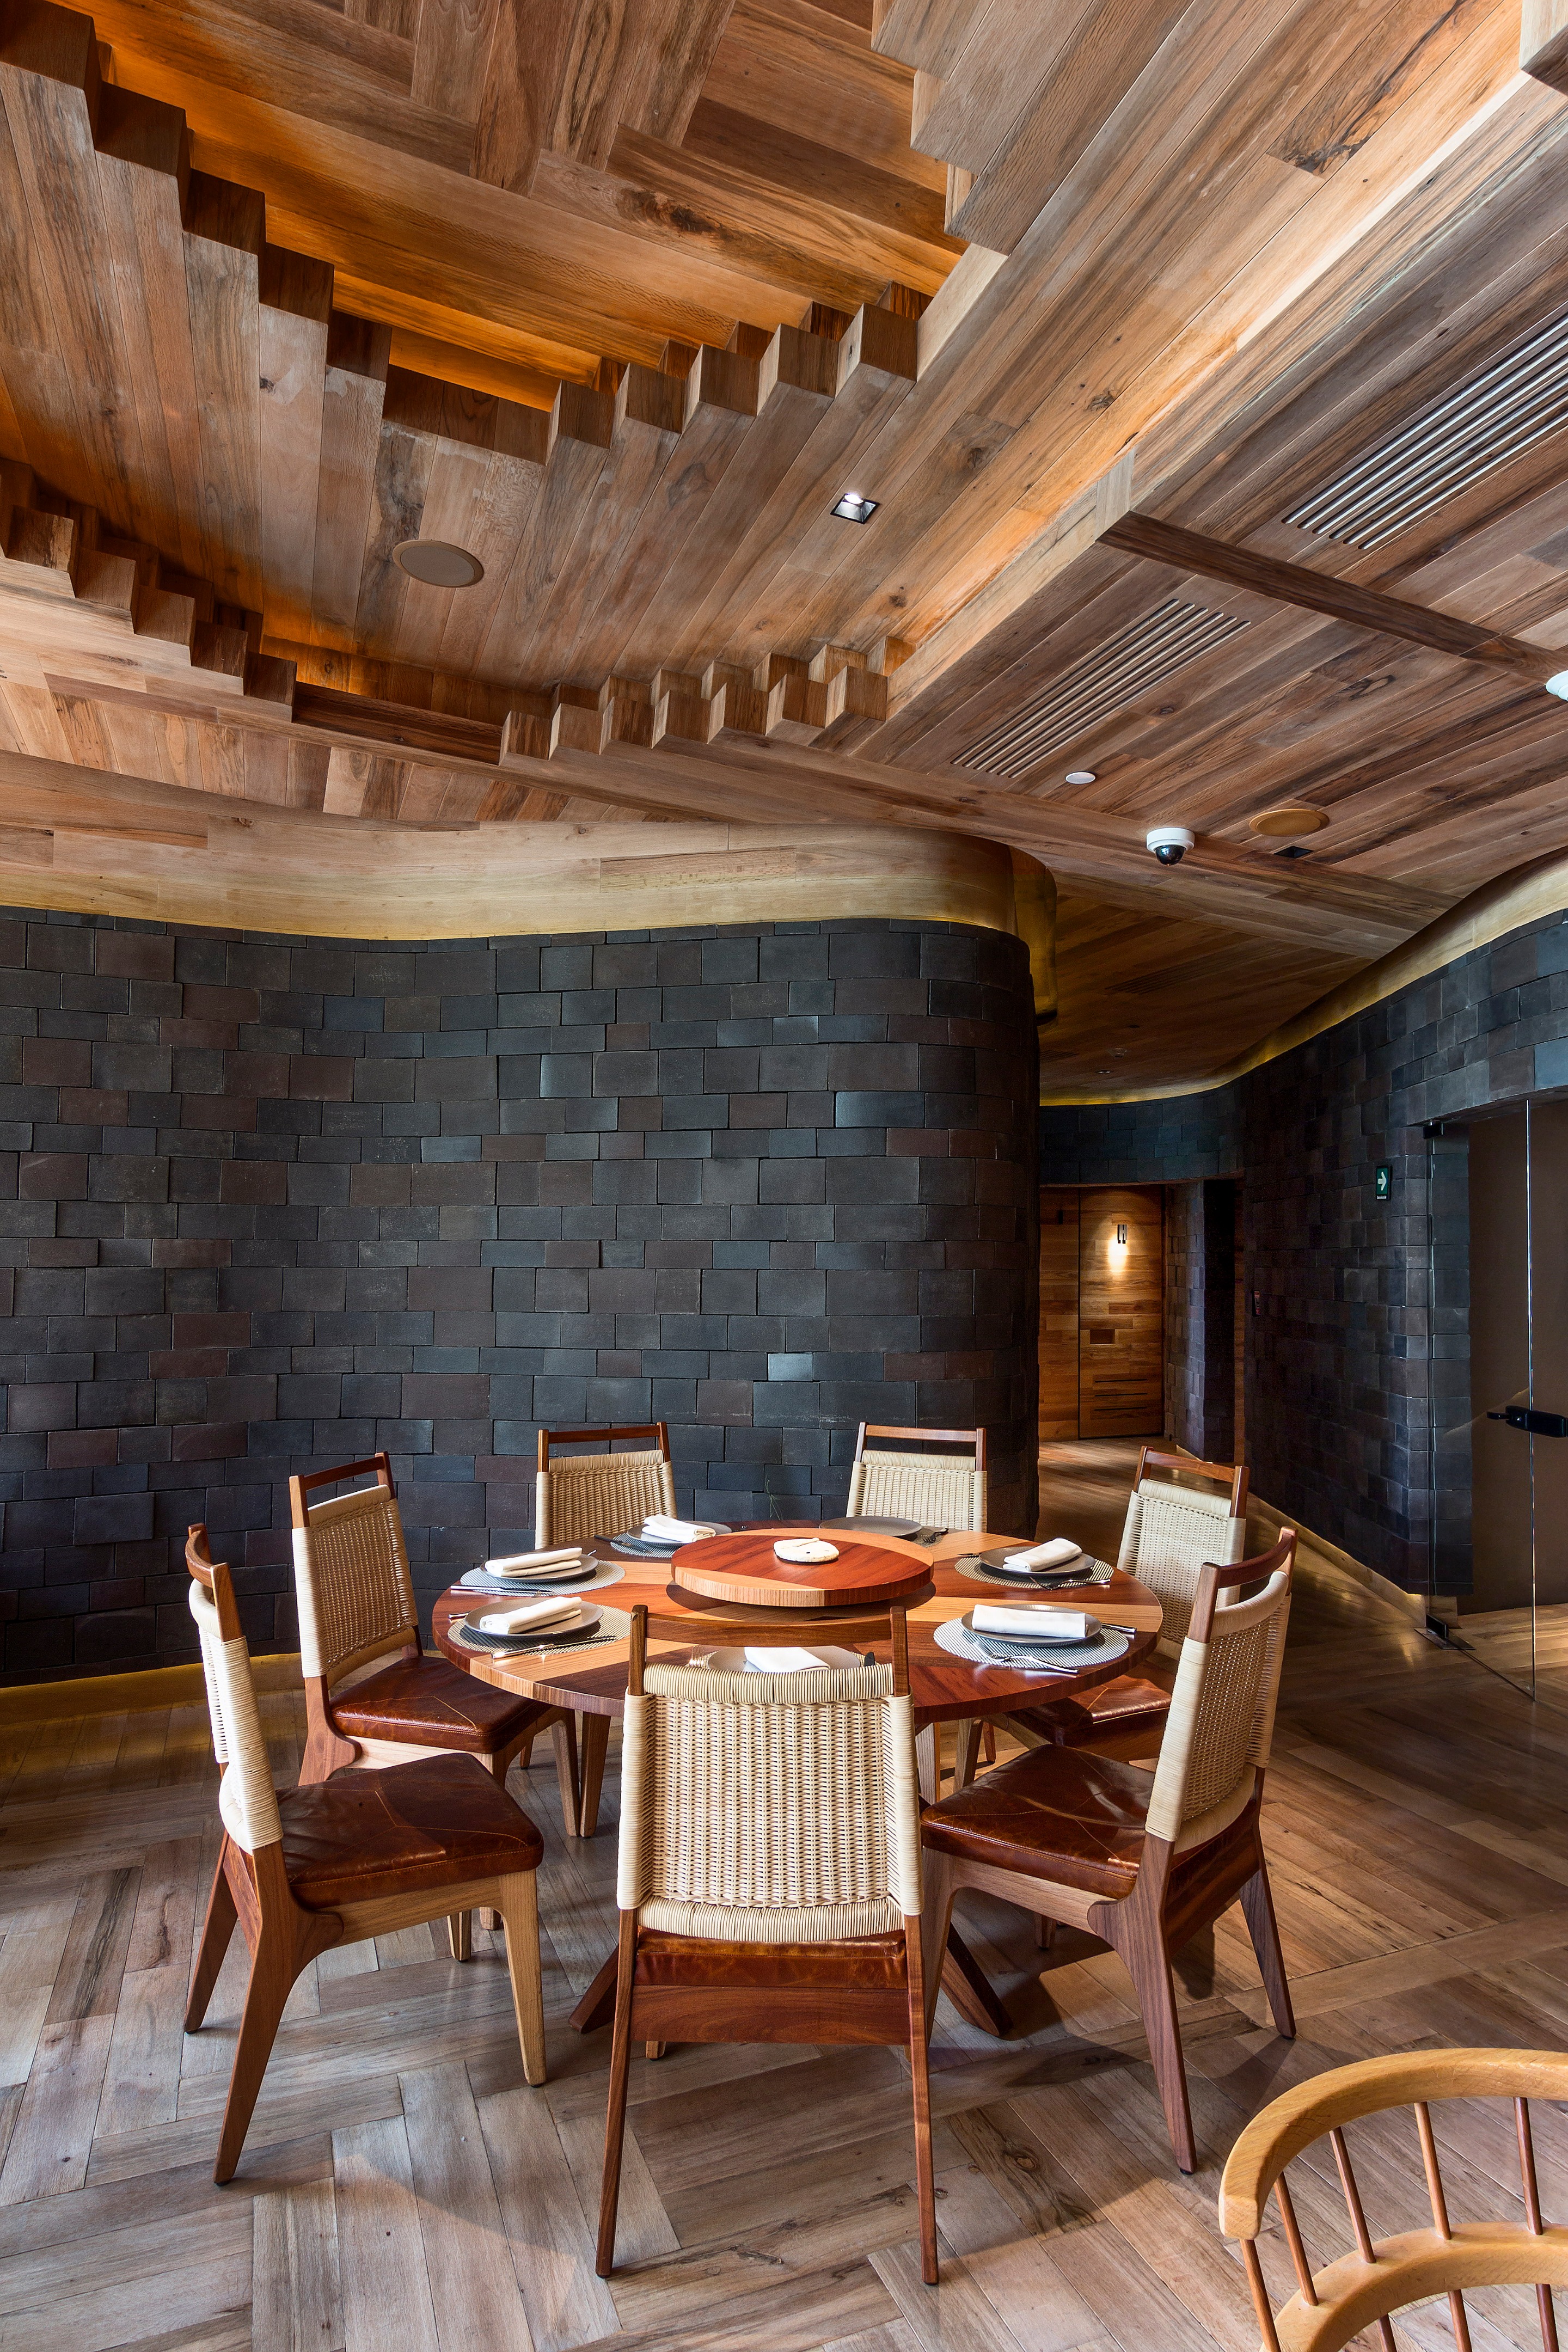 Кафе черепица. Ресторан в деревянном стиле. Деревянный потолок в ресторане. Ресторан деревянный интерьер. Деревянные стены в ресторане.